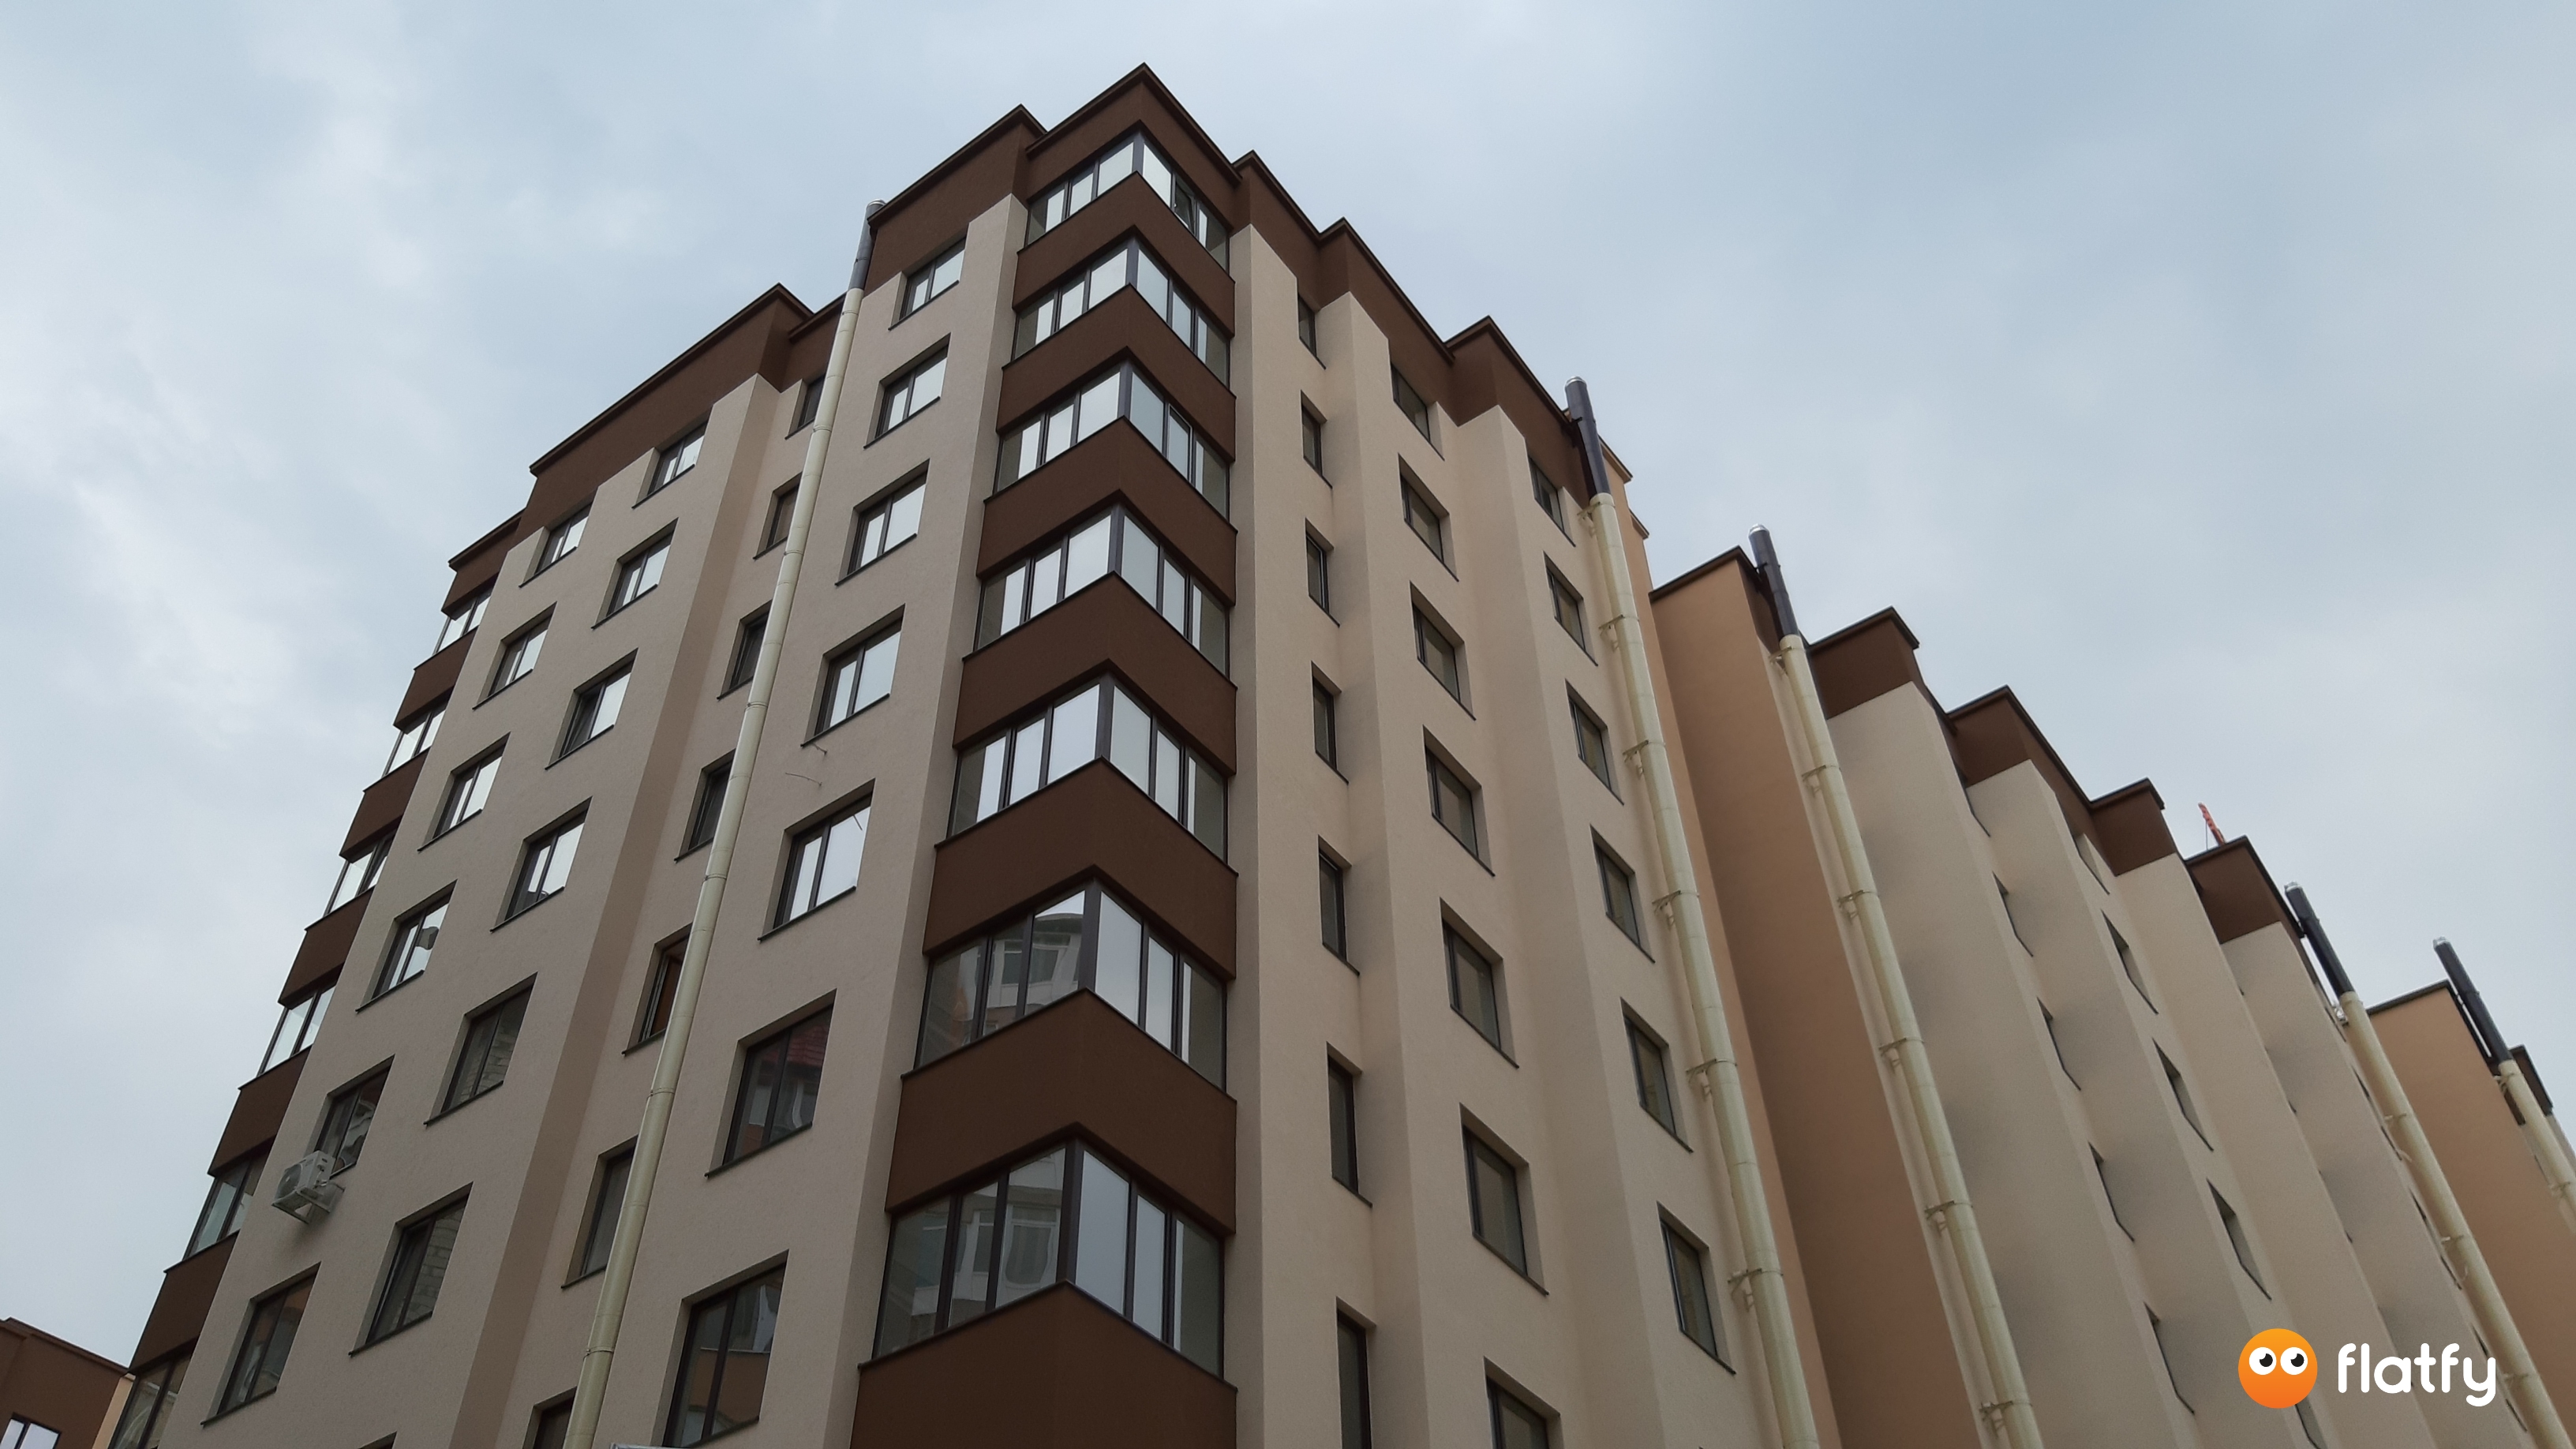 Evoluția construcției Complexului Complex Mircea cel Bătrîn 39 - Punct 3, Martie 2019